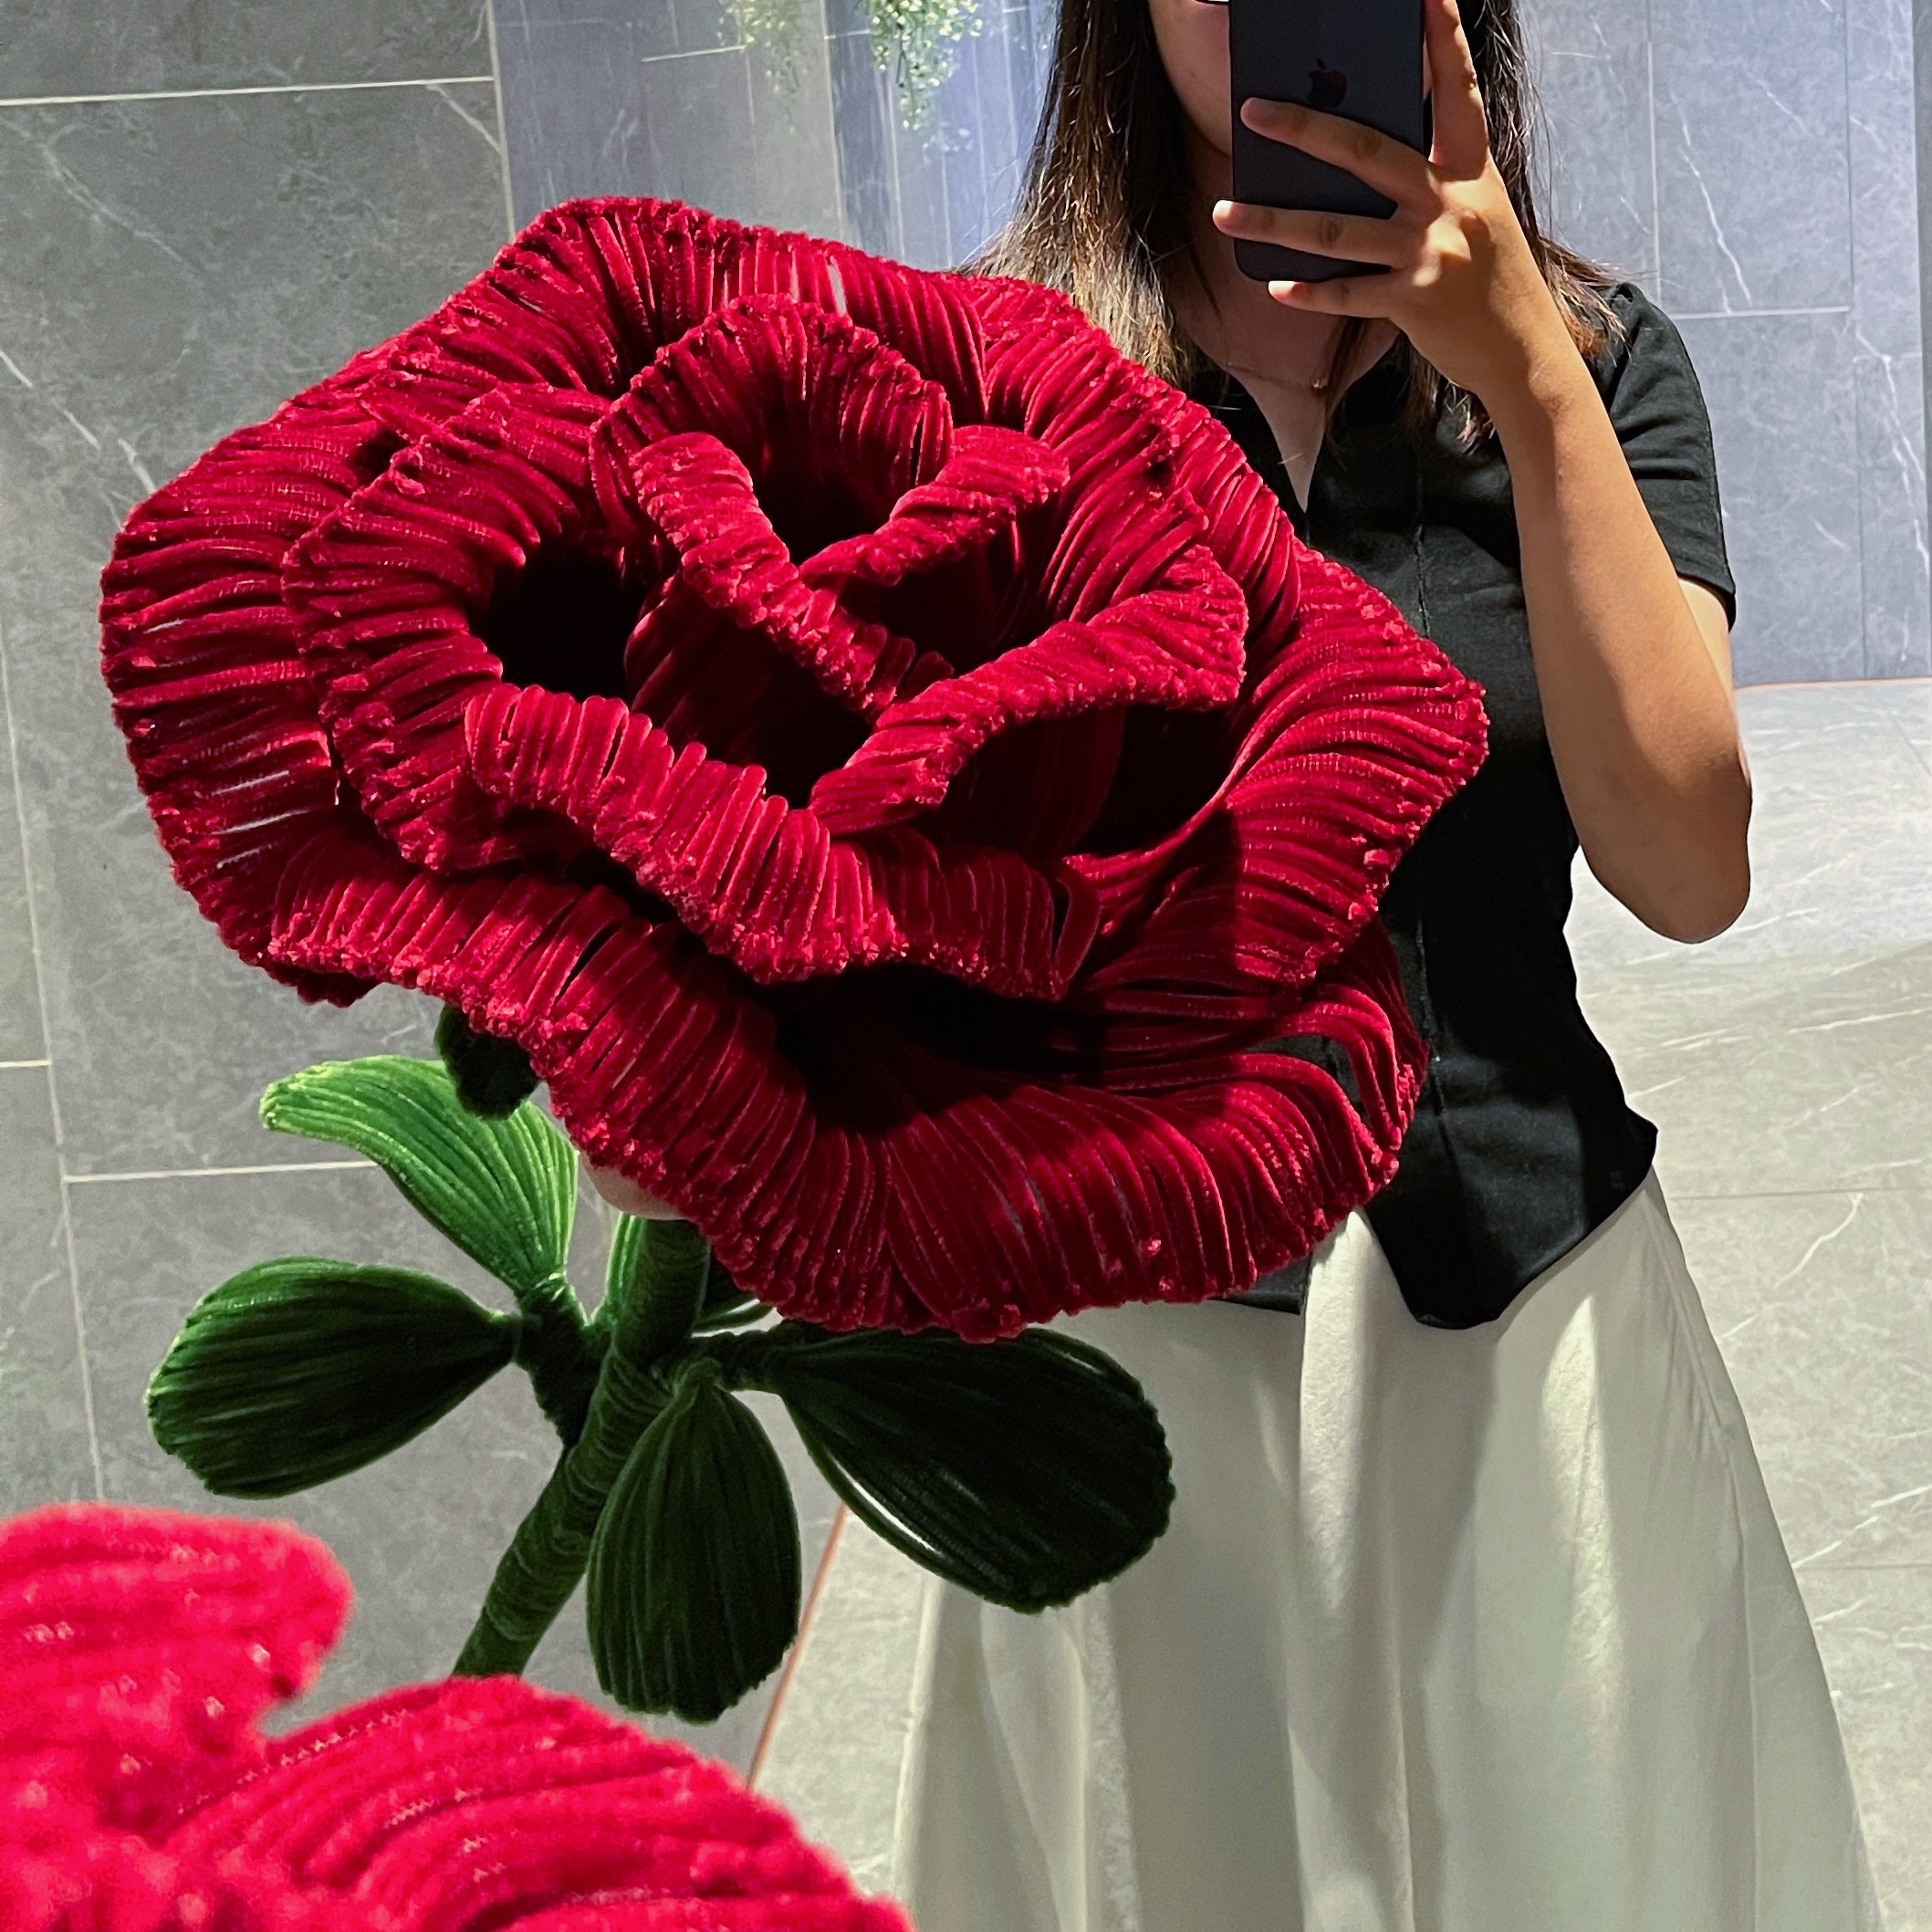 扭扭棒特大巨型玫瑰花diy材料包自制仿绒超大永生花送闺蜜女朋友